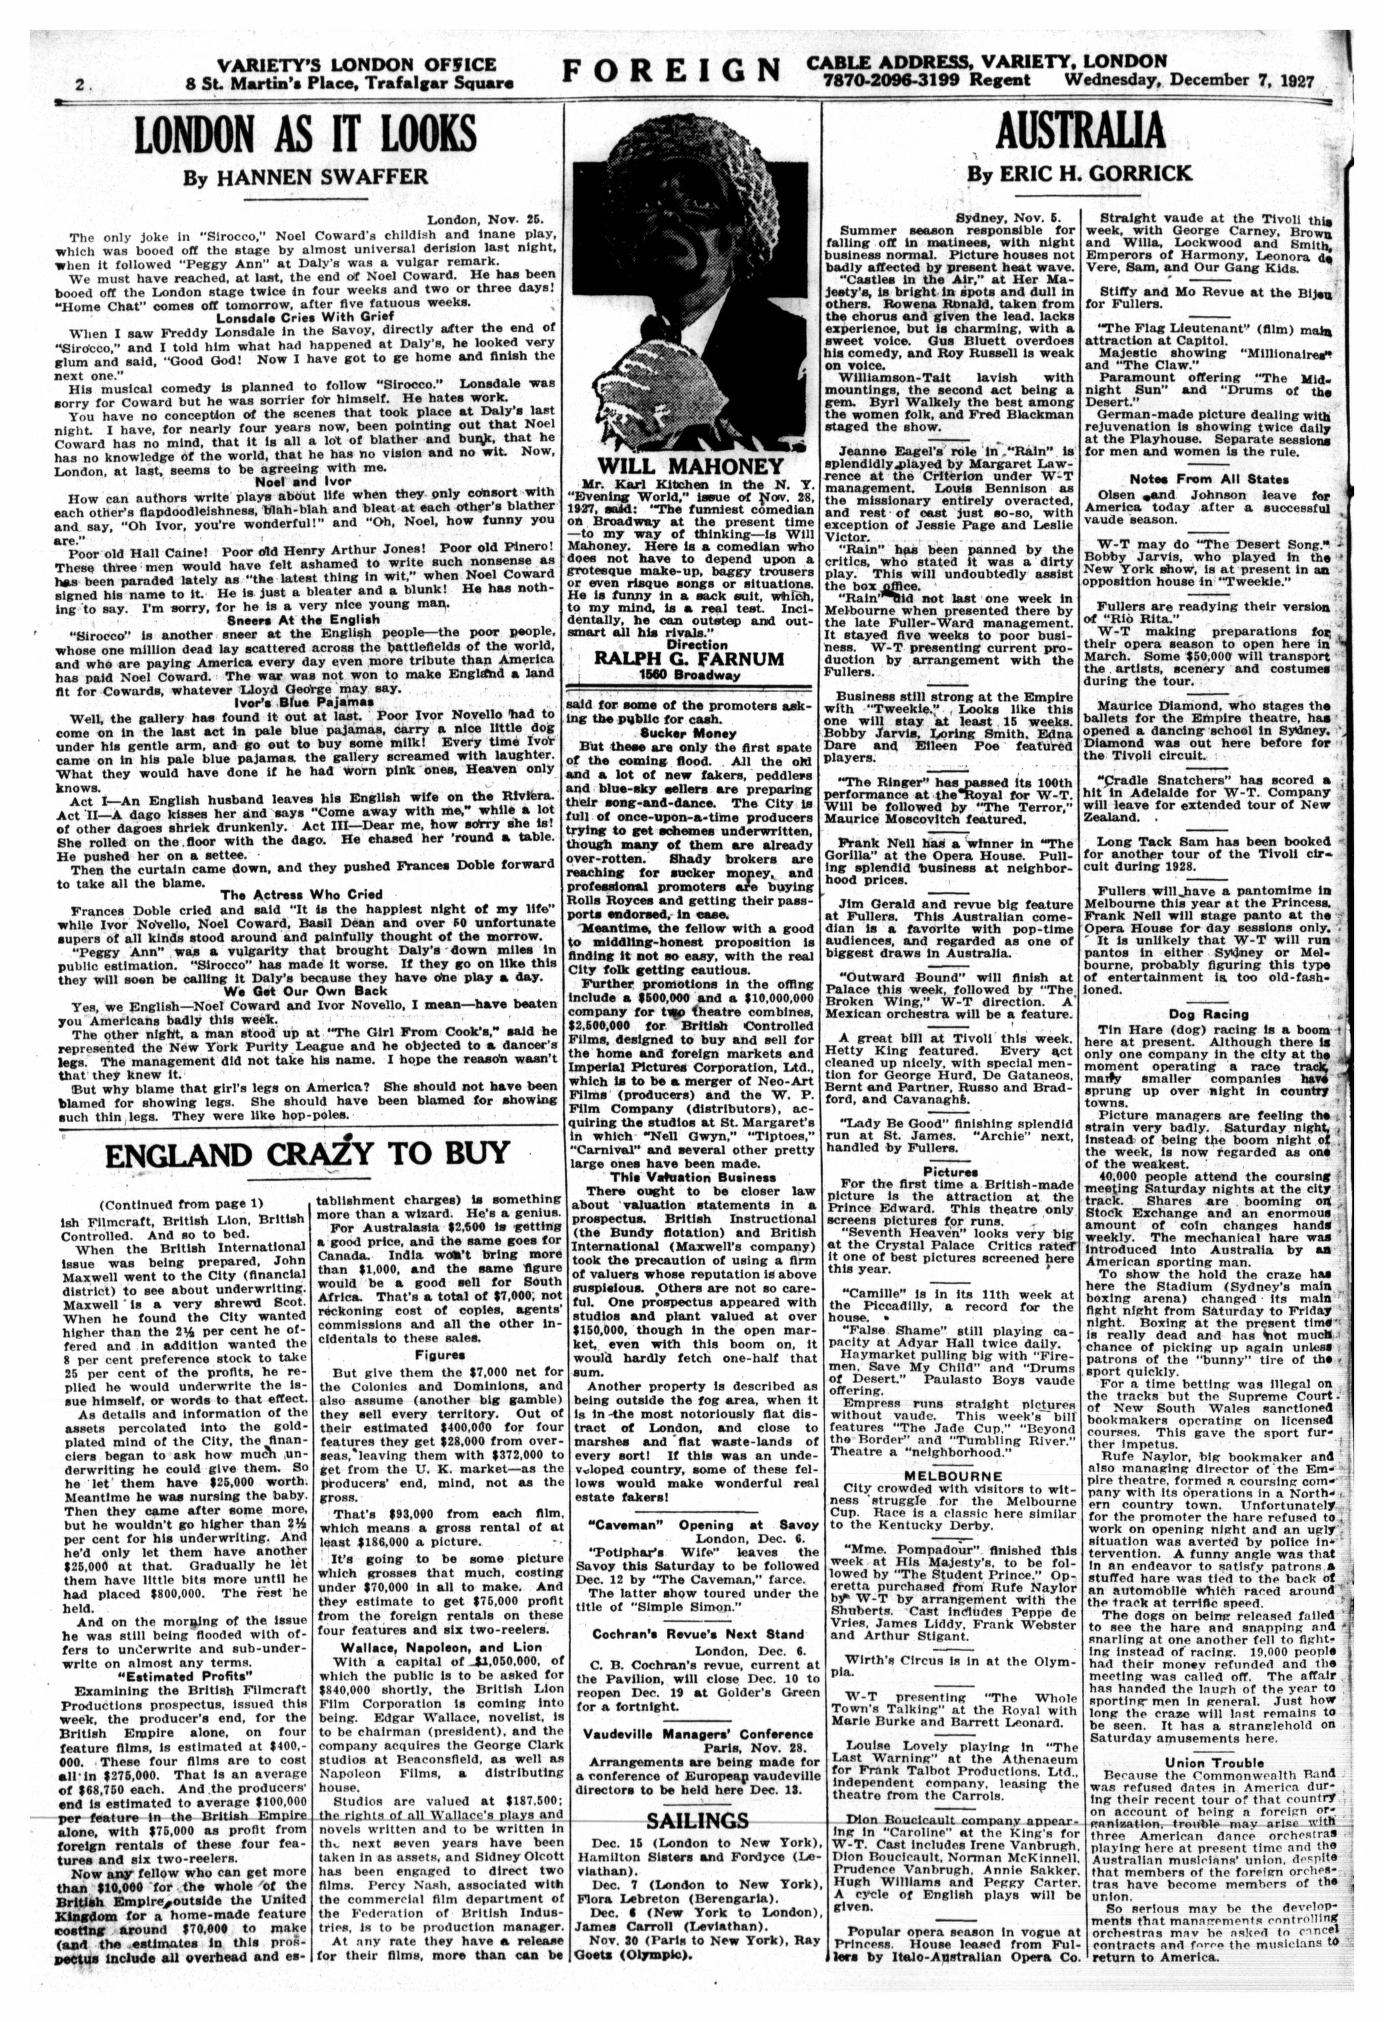 Variety (December 1927)